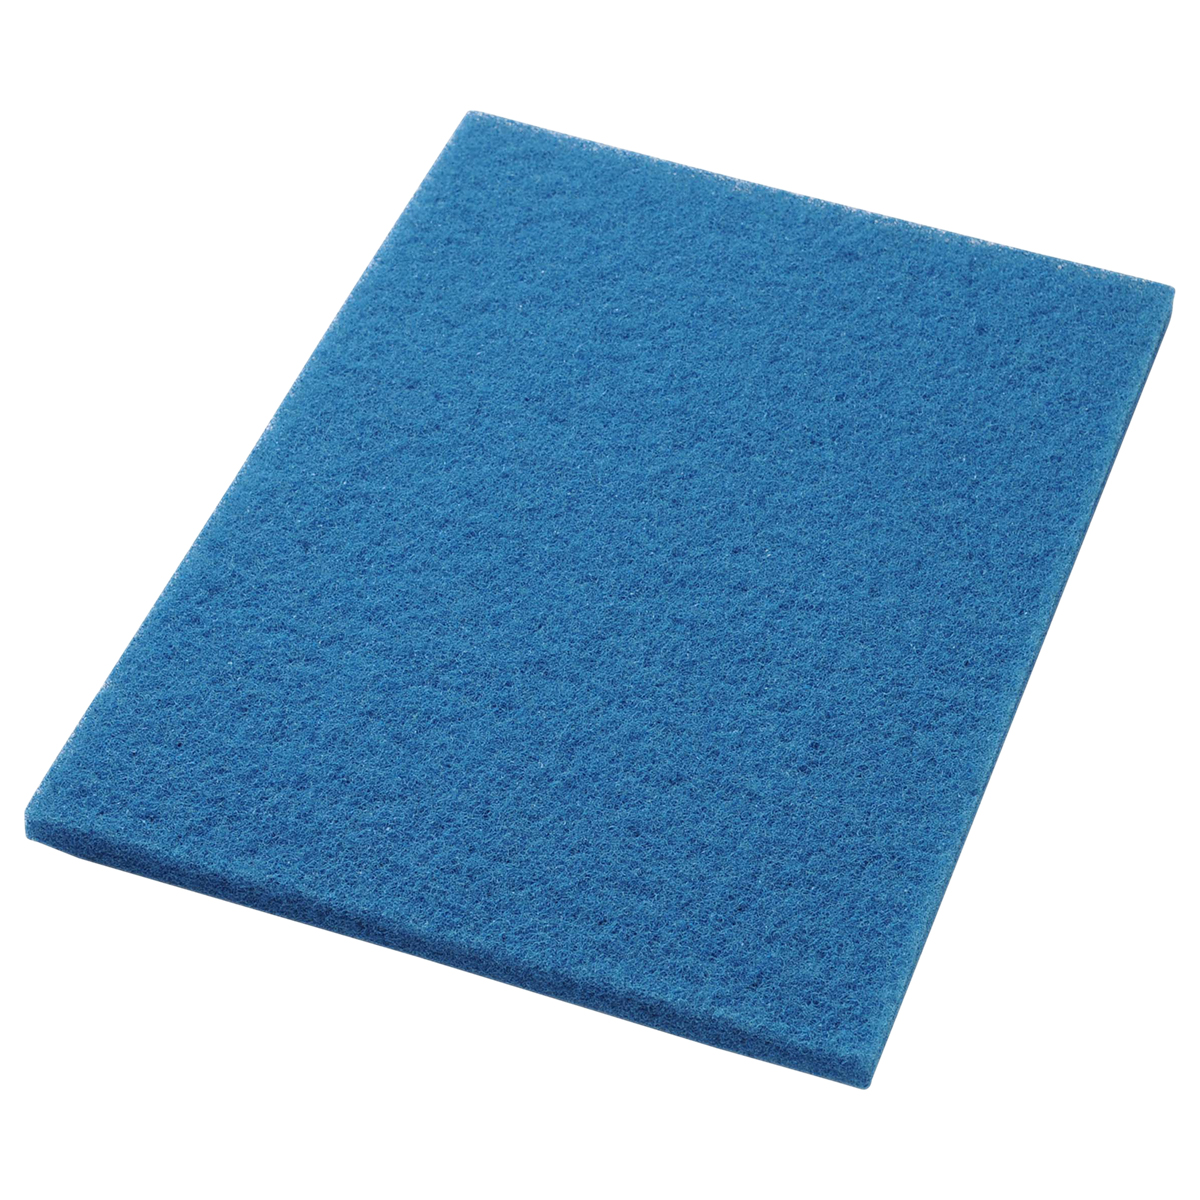 14x20 Blue Rectangular Cleaner Floor Pad, 5/cs